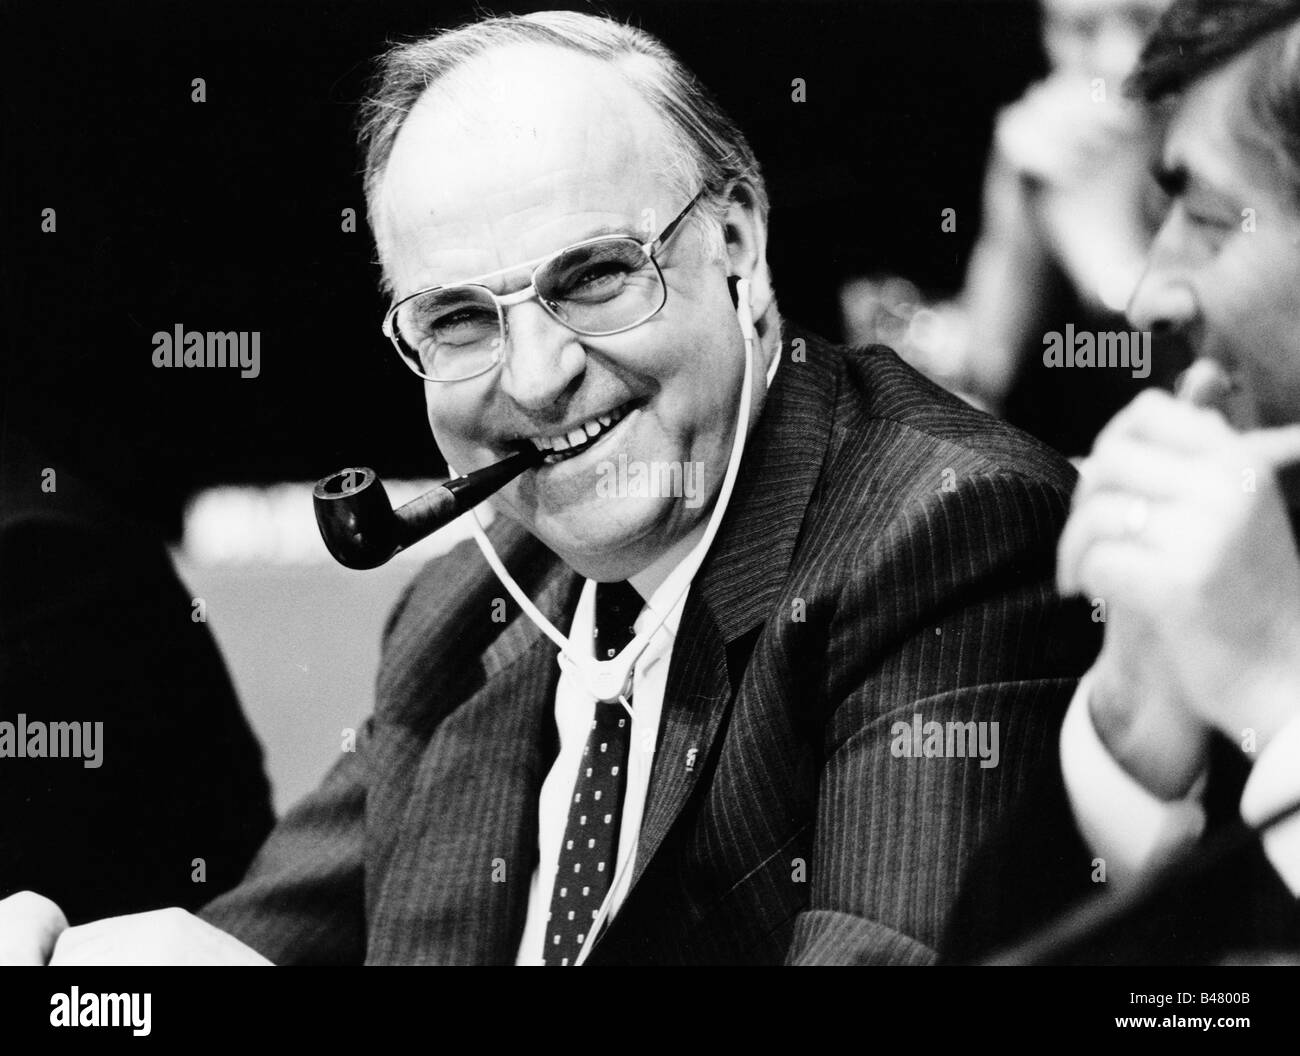 Kohl, Helmut, * 3.4.1930, deutscher Politiker (CDU), Bundeskanzler von Deutschland 1982 - 1998, halbe Länge, auf der Konferenz der Europäischen Volkspartei 1986, Stockfoto